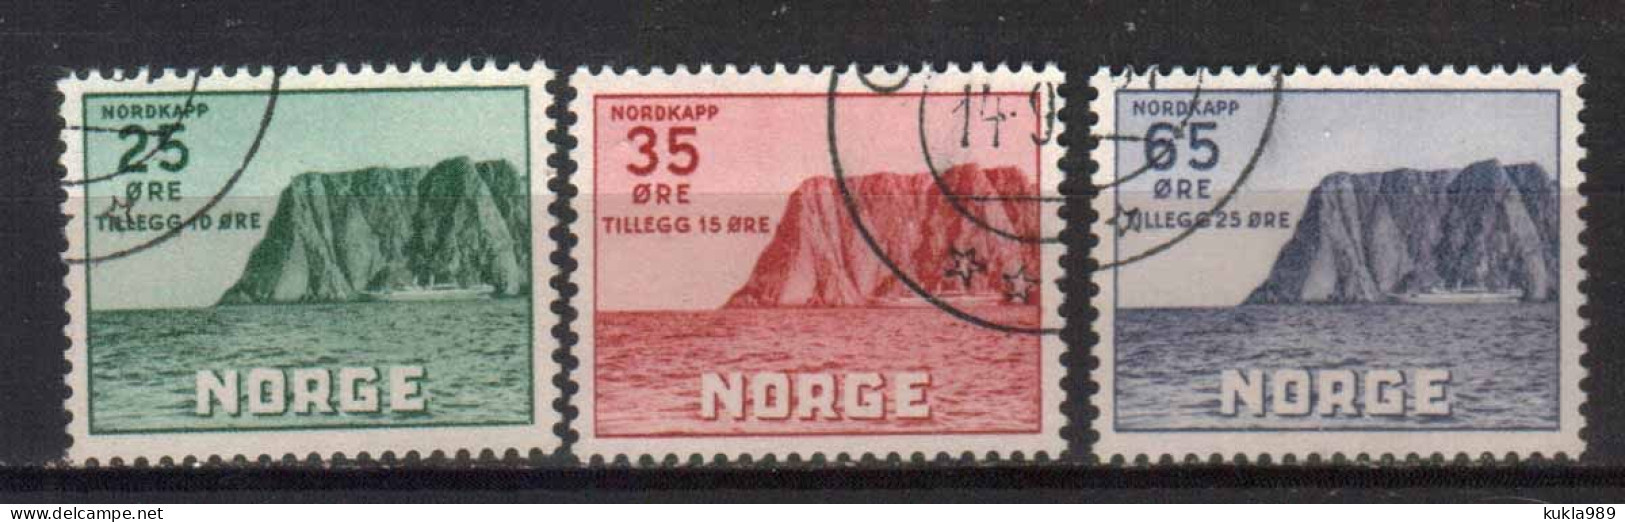 NORWAY STAMPS, 1930, Sc.#B1-B3, USED - Usati